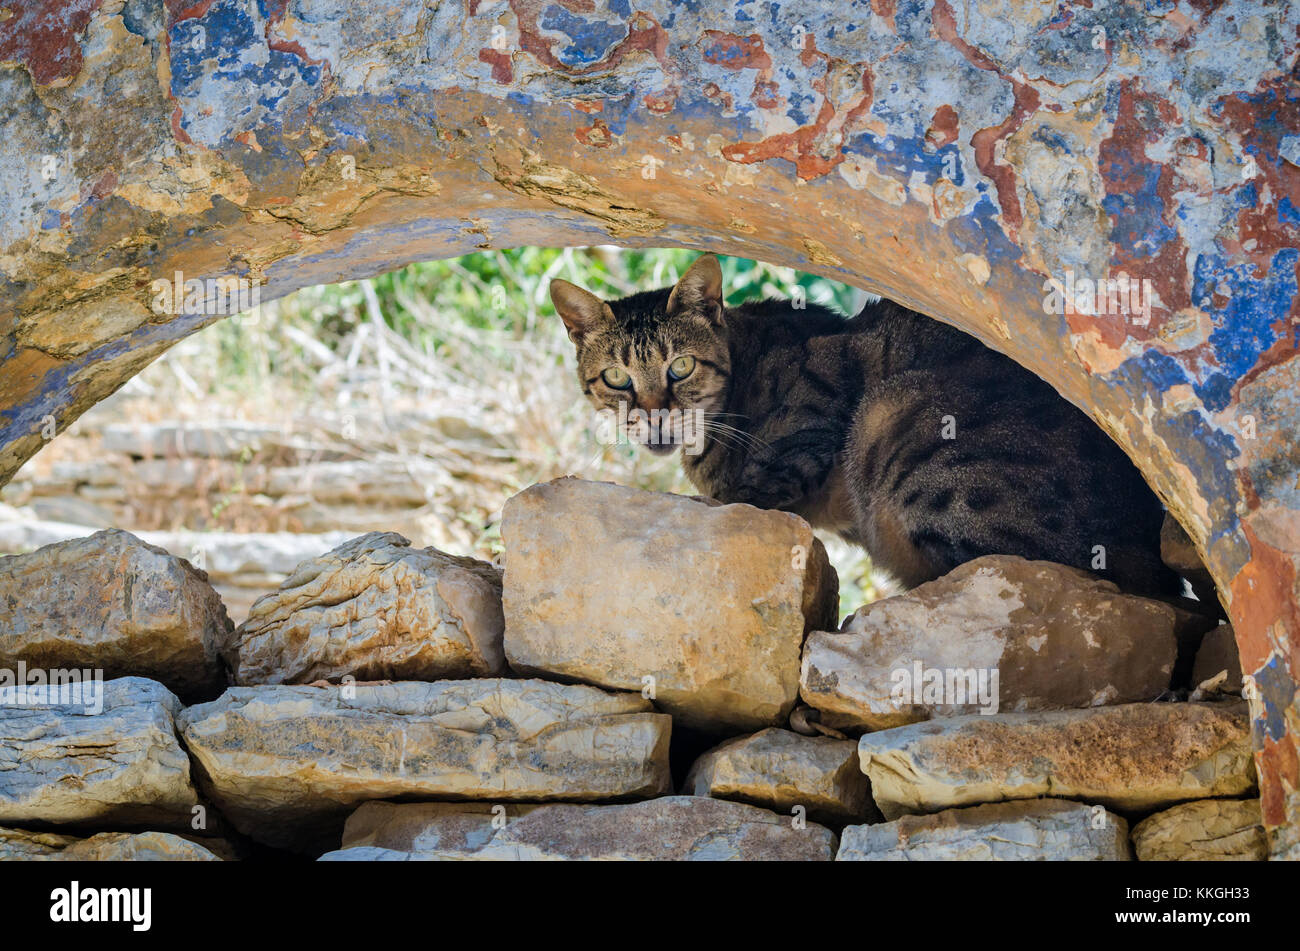 Dans le cadre d'un chat grec old weathered arche de pierre sur l'île de Symi, Grèce Banque D'Images